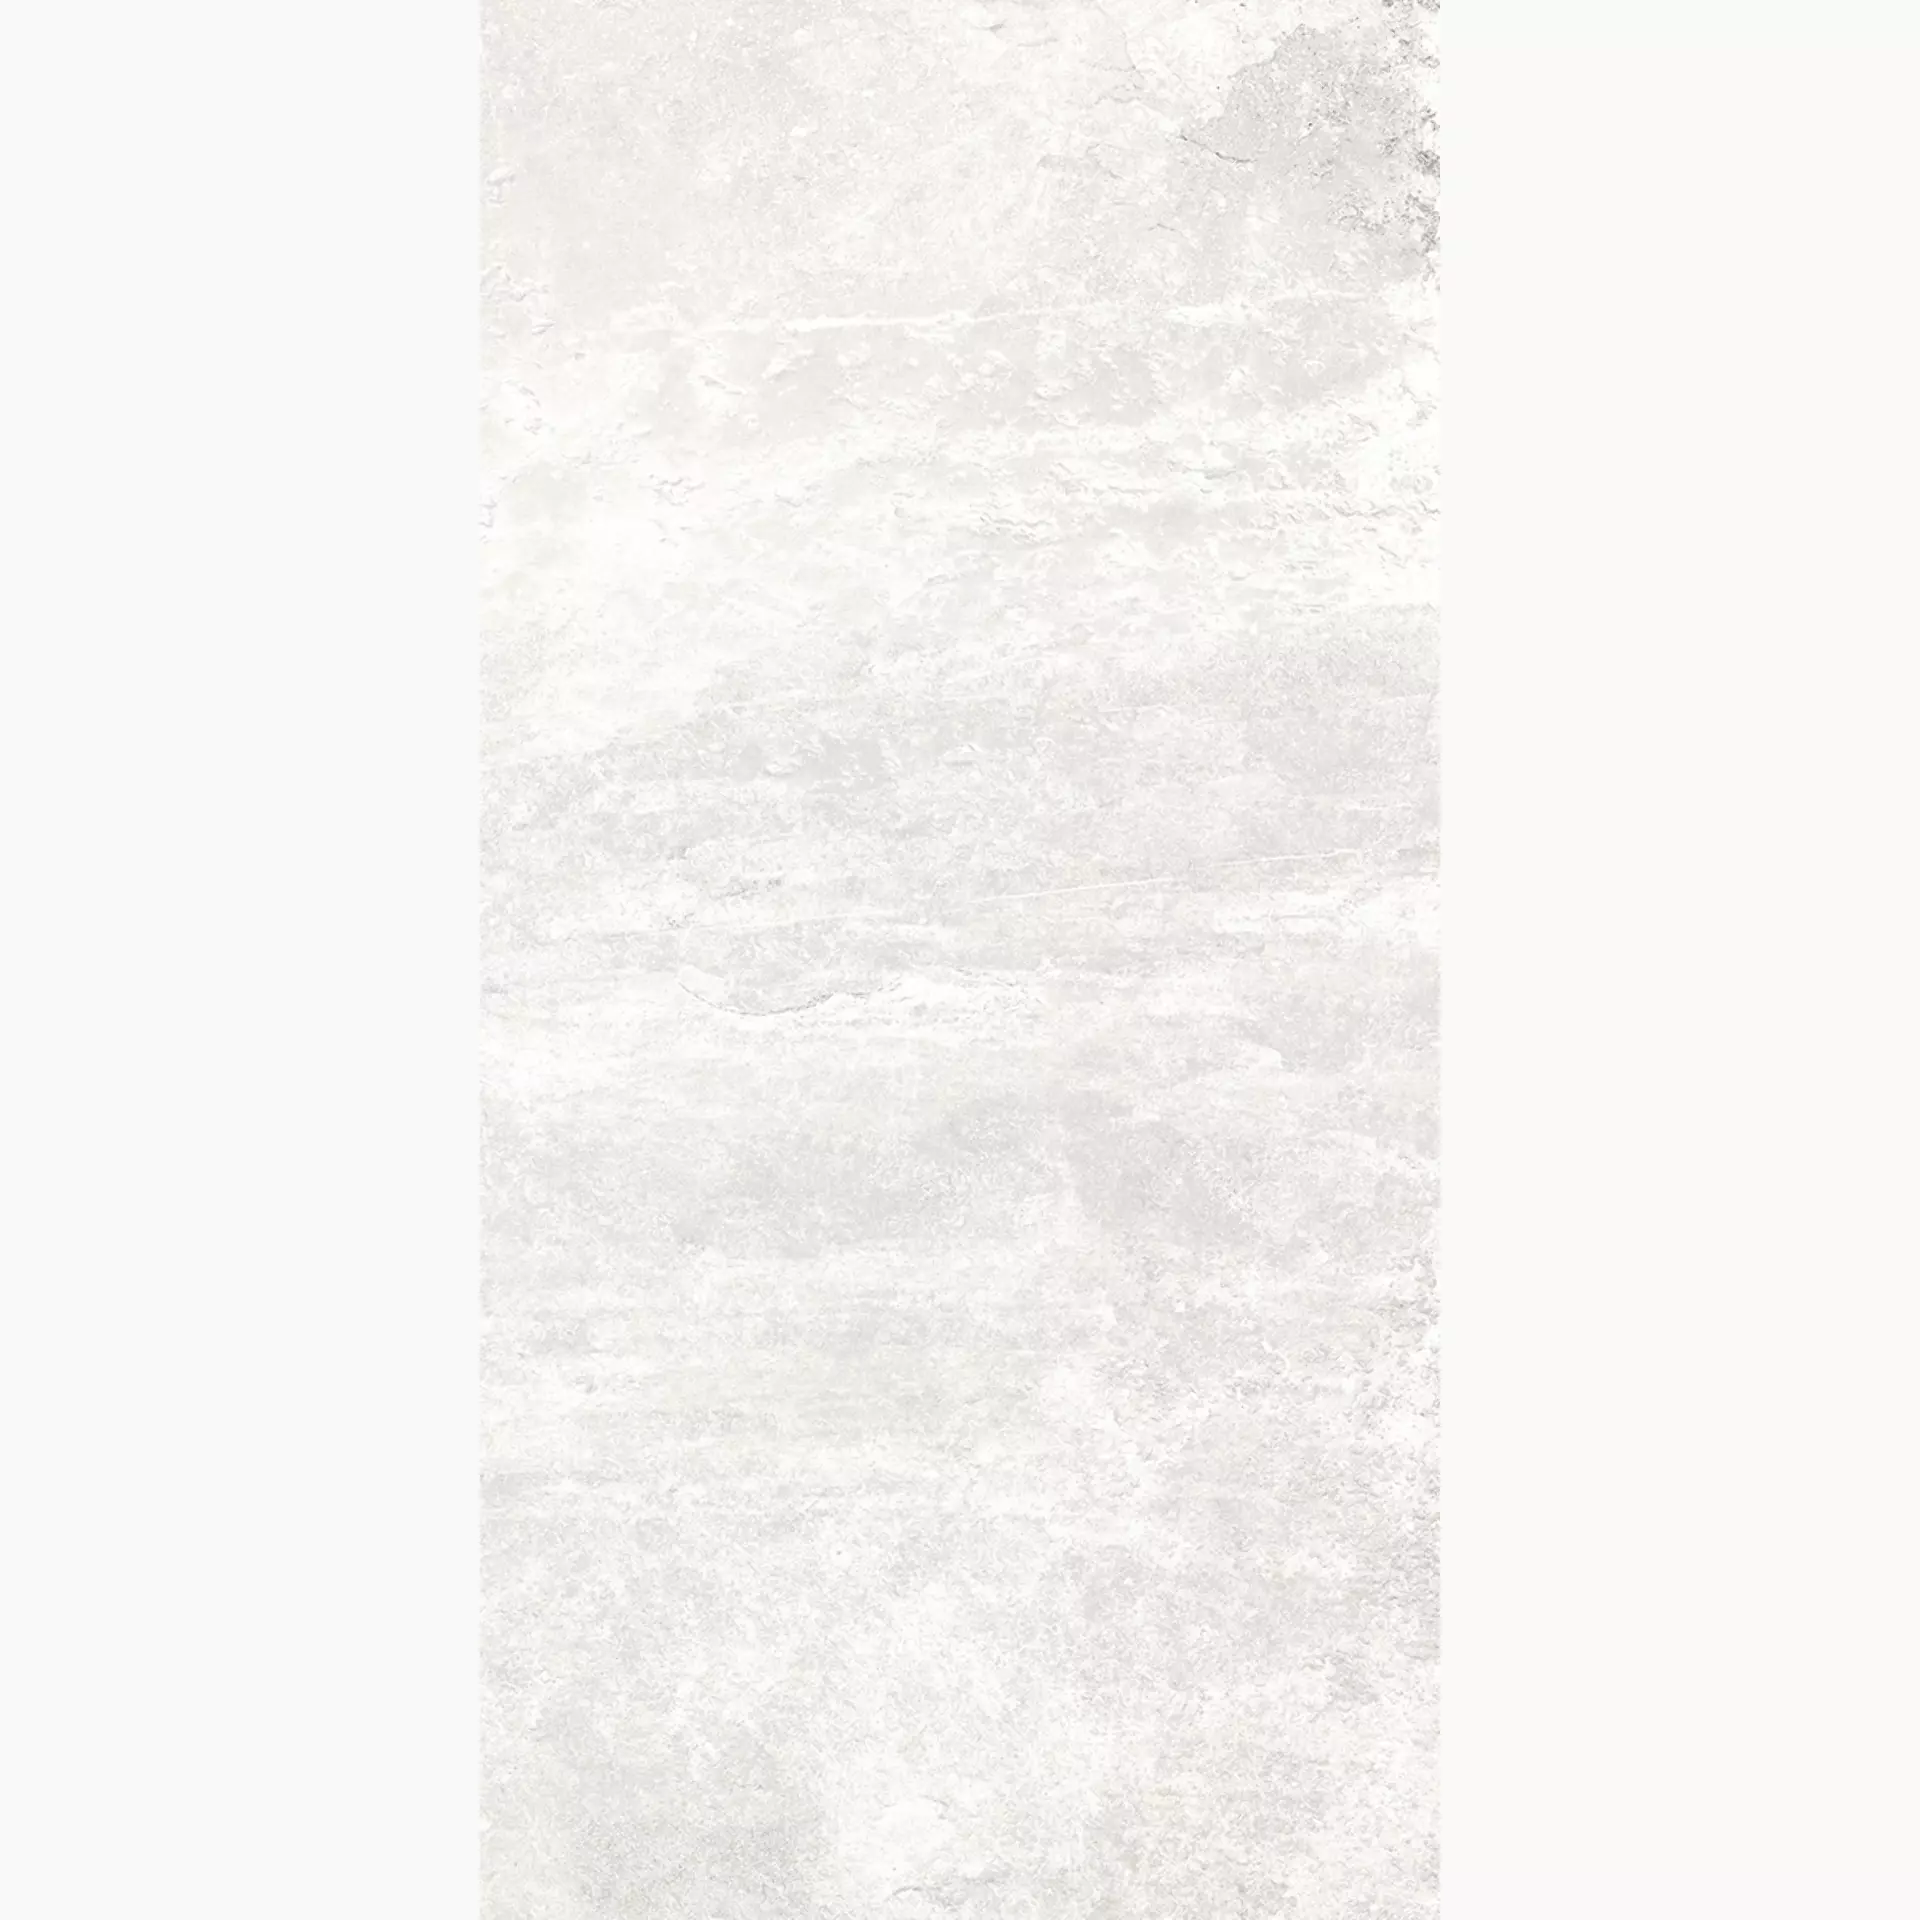 Rondine Ardesie White Naturale J86999 30,5x60,5cm 8,5mm